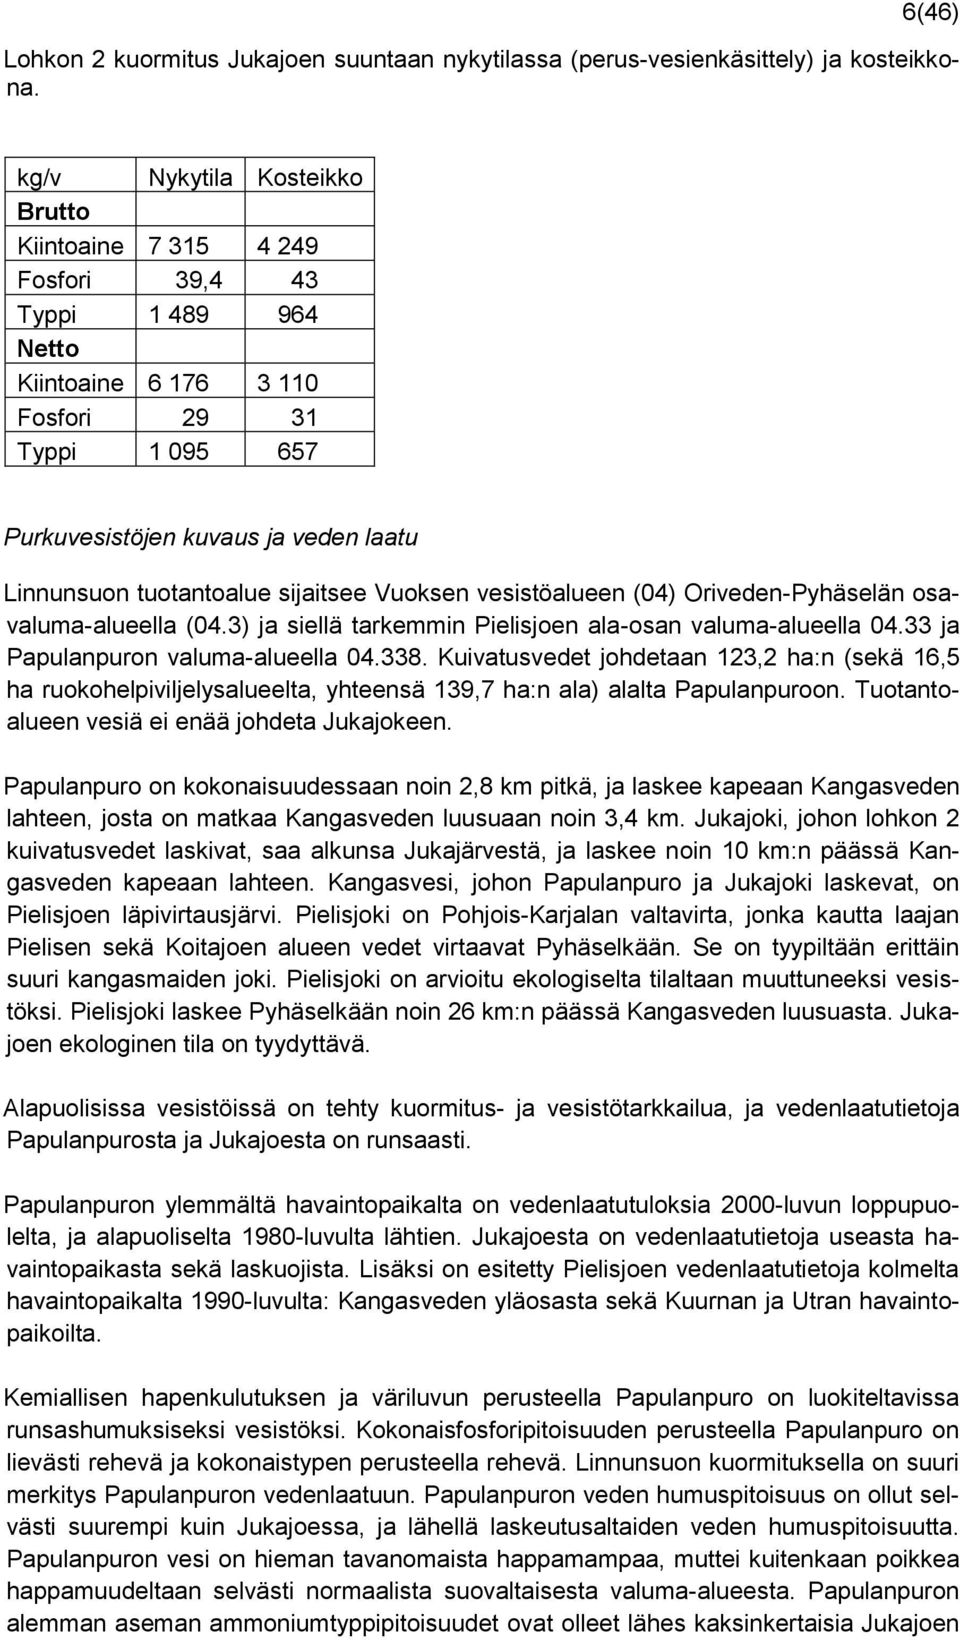 tuotantoalue sijaitsee Vuoksen vesistöalueen (04) Oriveden-Pyhäselän osavaluma-alueella (04.3) ja siellä tarkemmin Pielisjoen ala-osan valuma-alueella 04.33 ja Papulanpuron valuma-alueella 04.338.